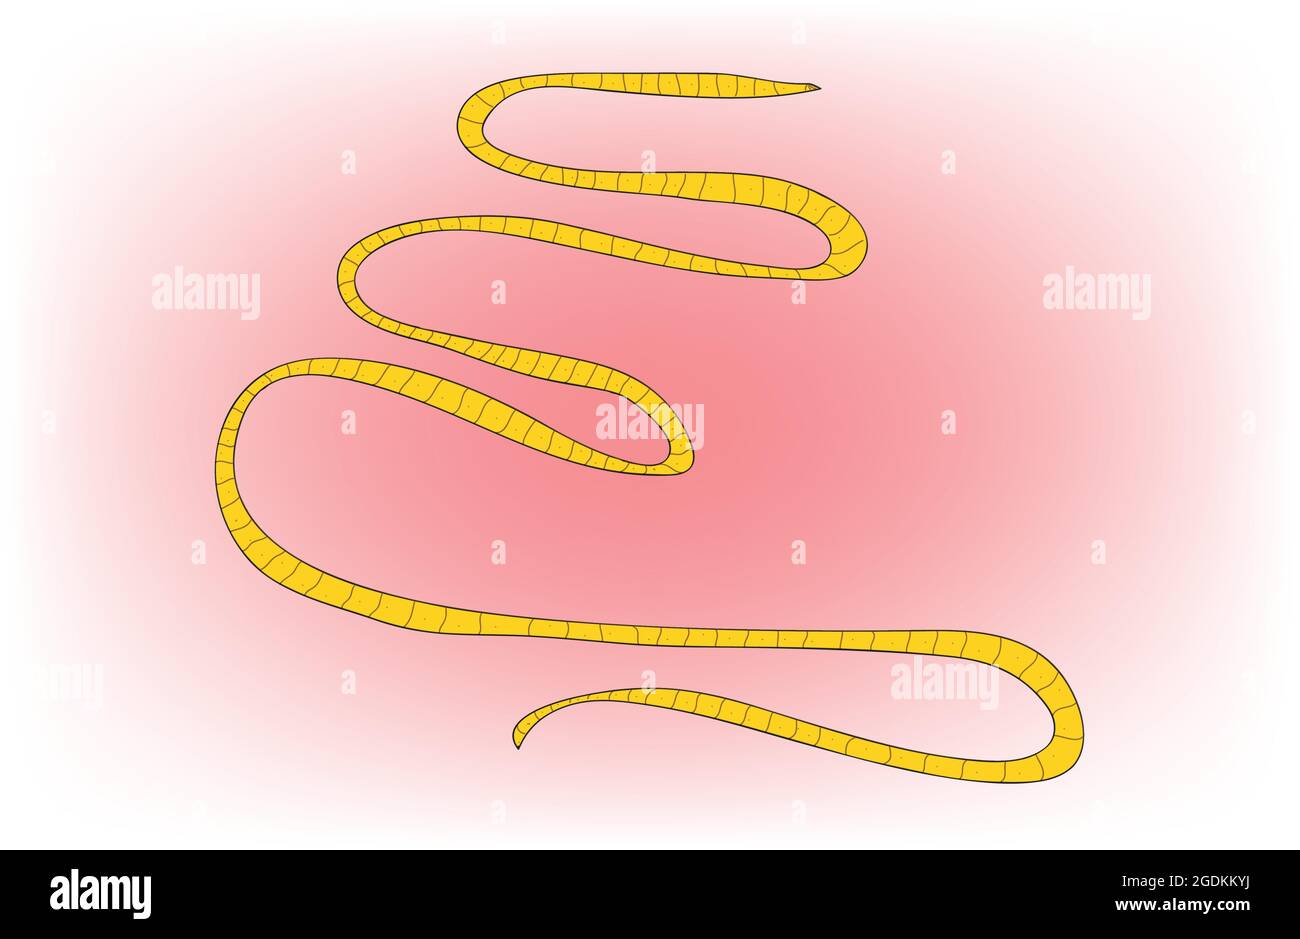 taenia solium, Pork tapeworm, Biological anatomy of long taenia solium pork tapeworm Stock Vector